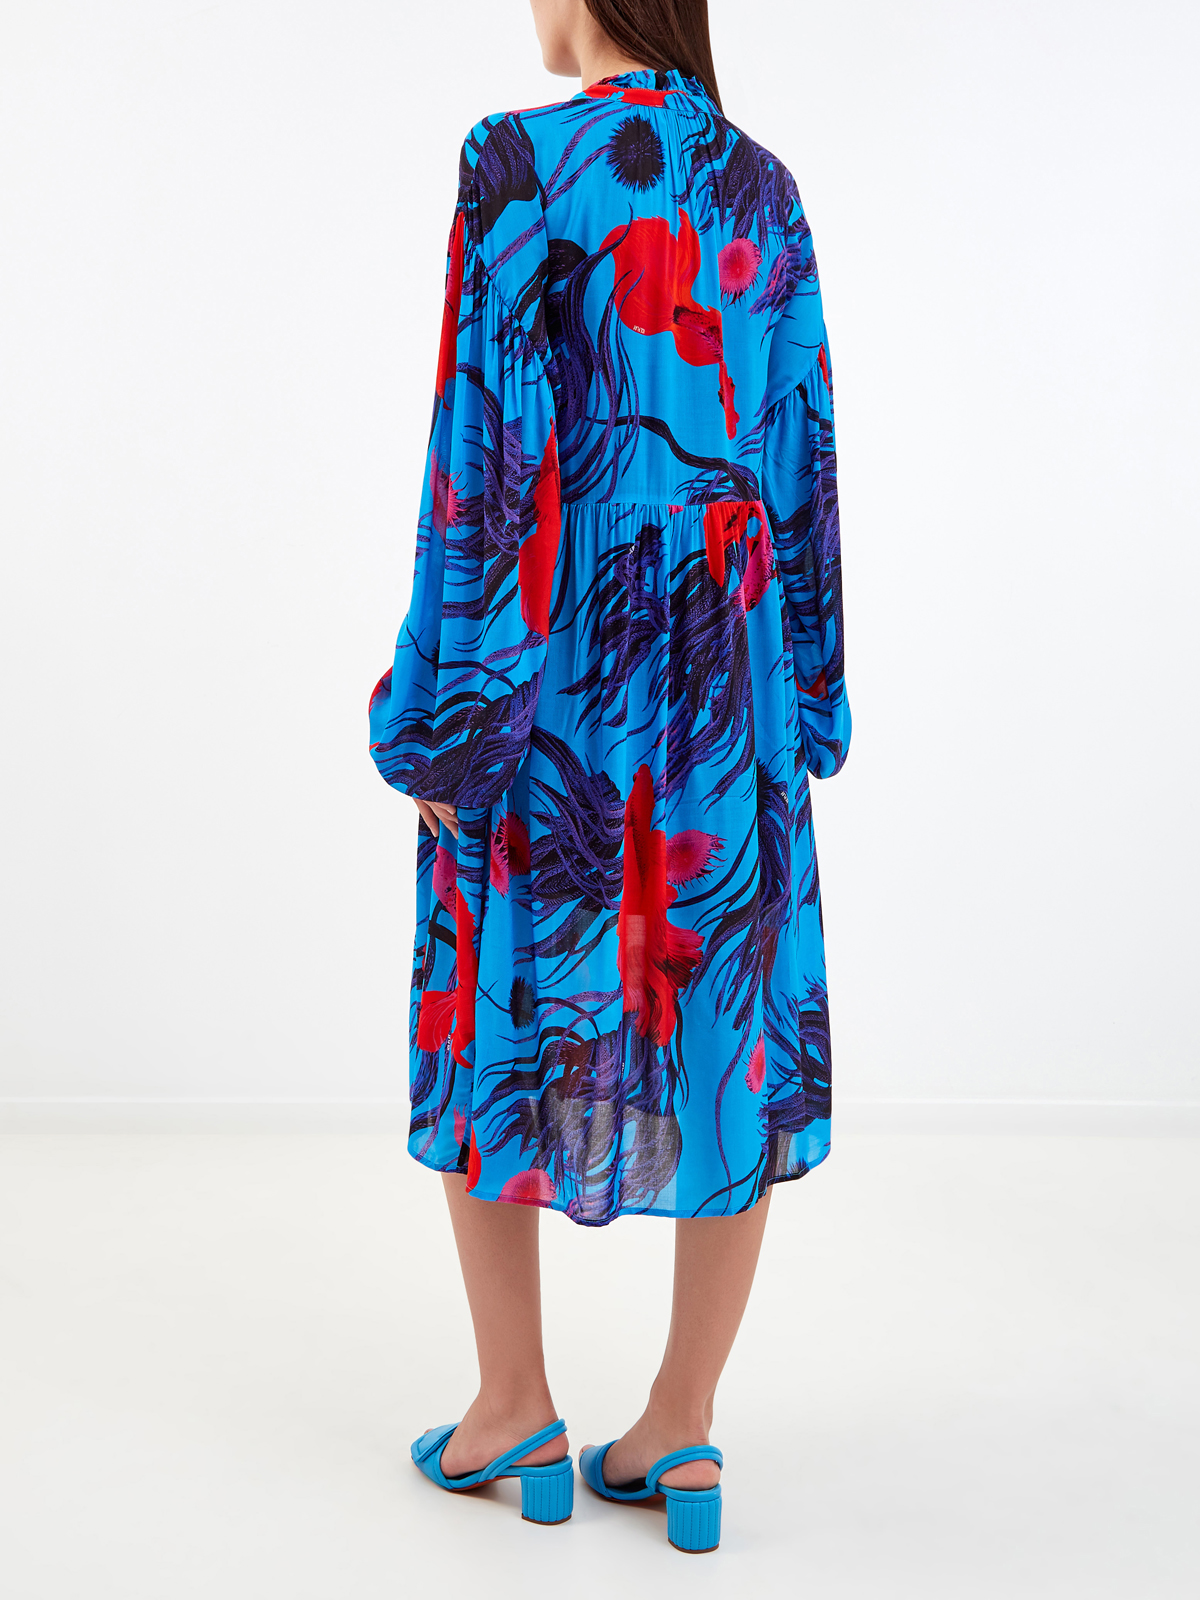 Яркое платье-миди из шифона с флористическим принтом ICE PLAY, цвет синий, размер S;M;L;XL - фото 4